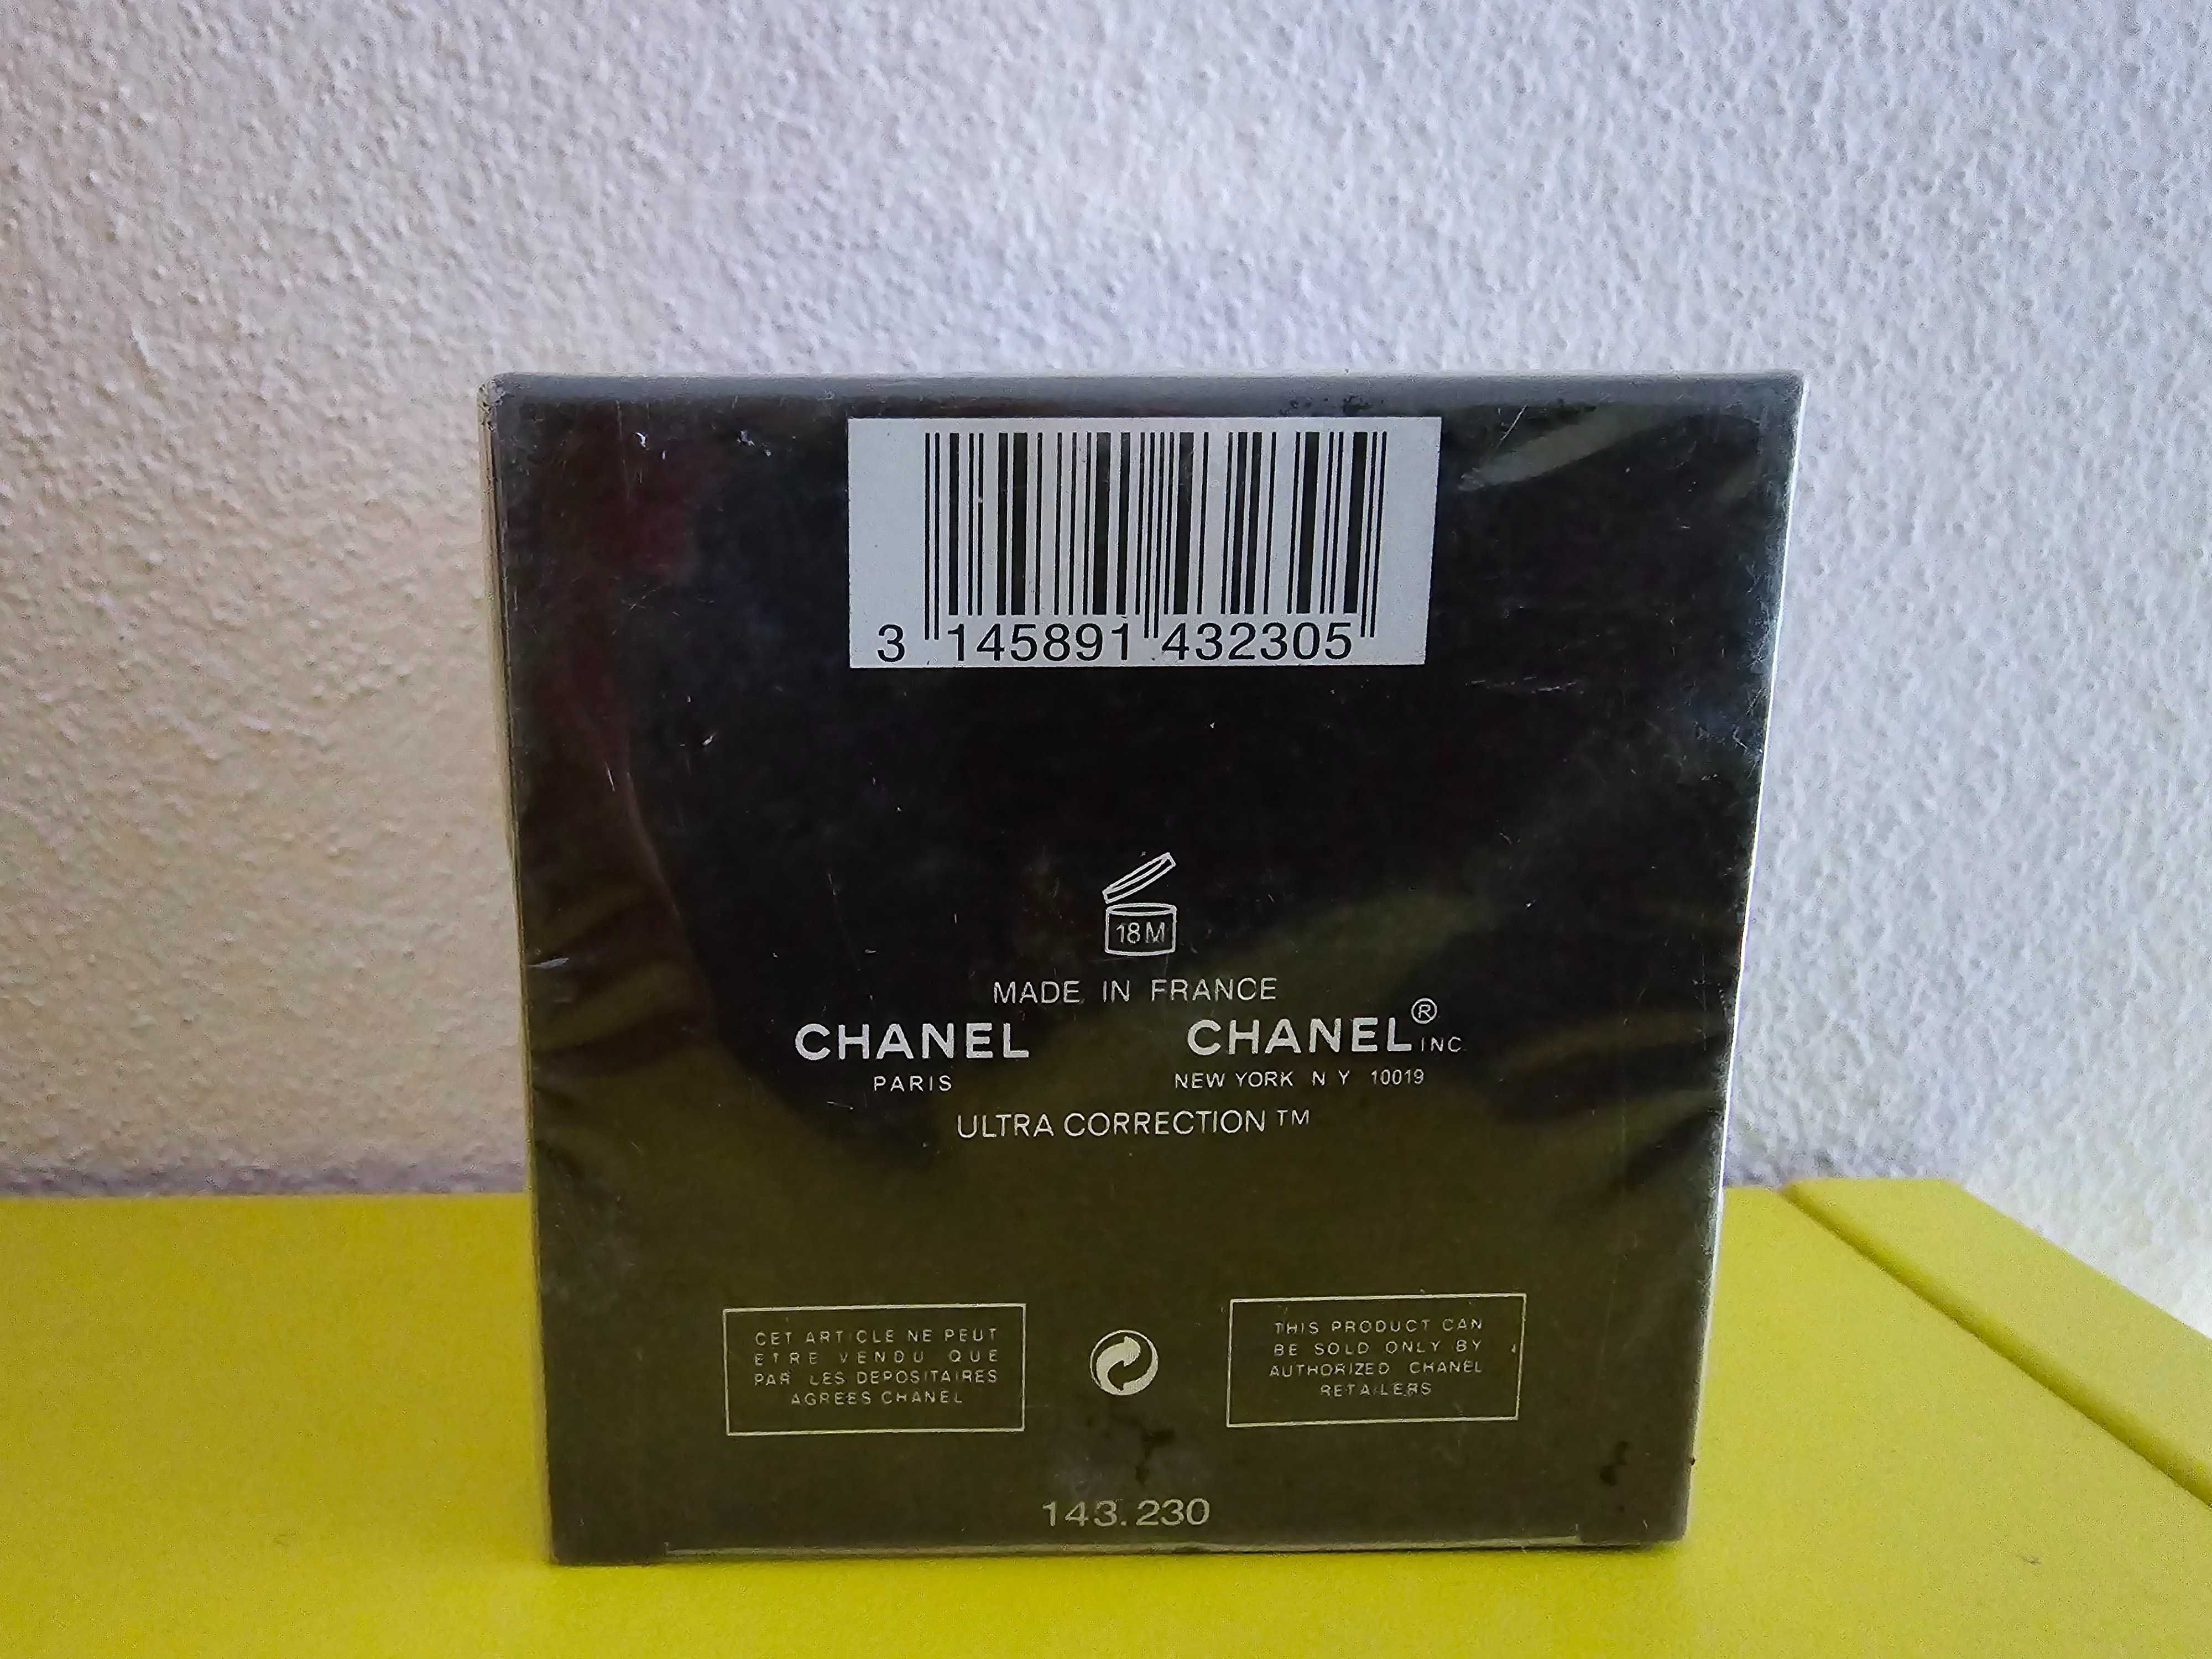 Chanel Ultra Correction Lift, crema de noapte pentru fata, 50 grame